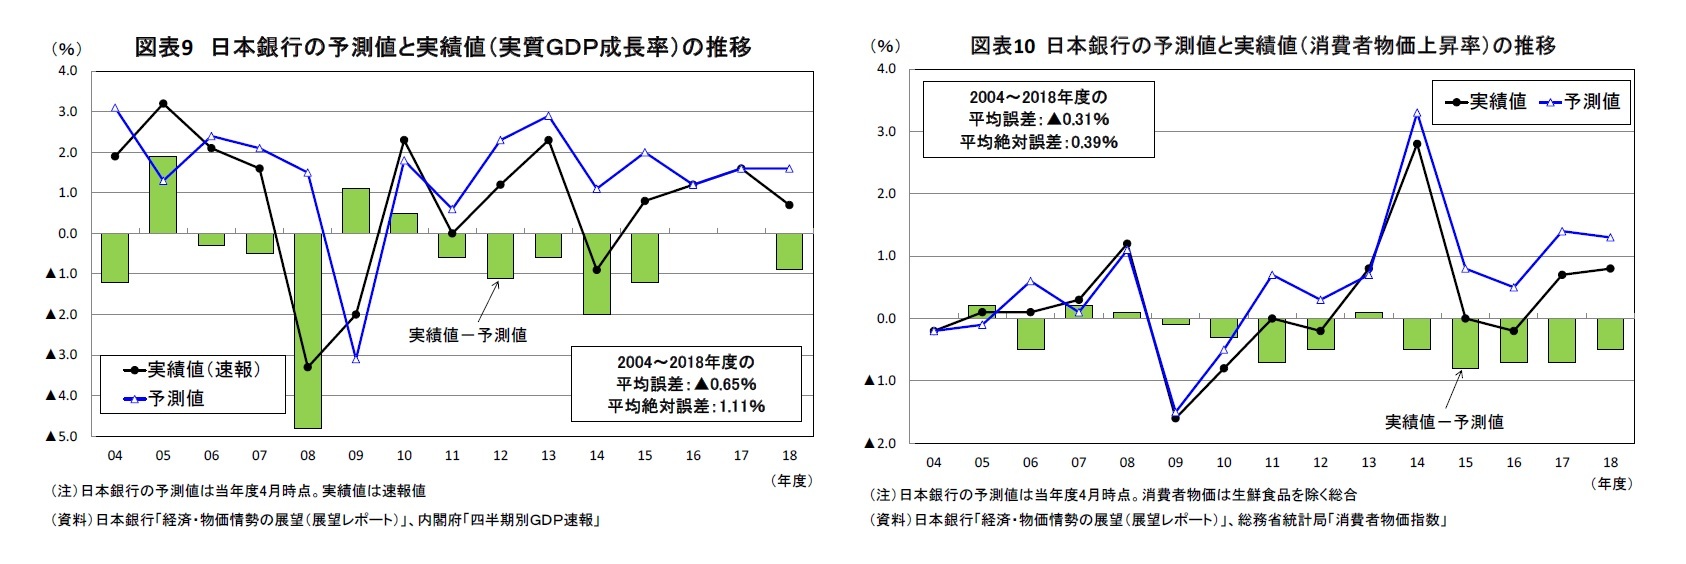 図表9 日本銀行の予測値と実績値（実質ＧＤＰ成長率）の推移/図表10 日本銀行の予測値と実績値（消費者物価上昇率）の推移